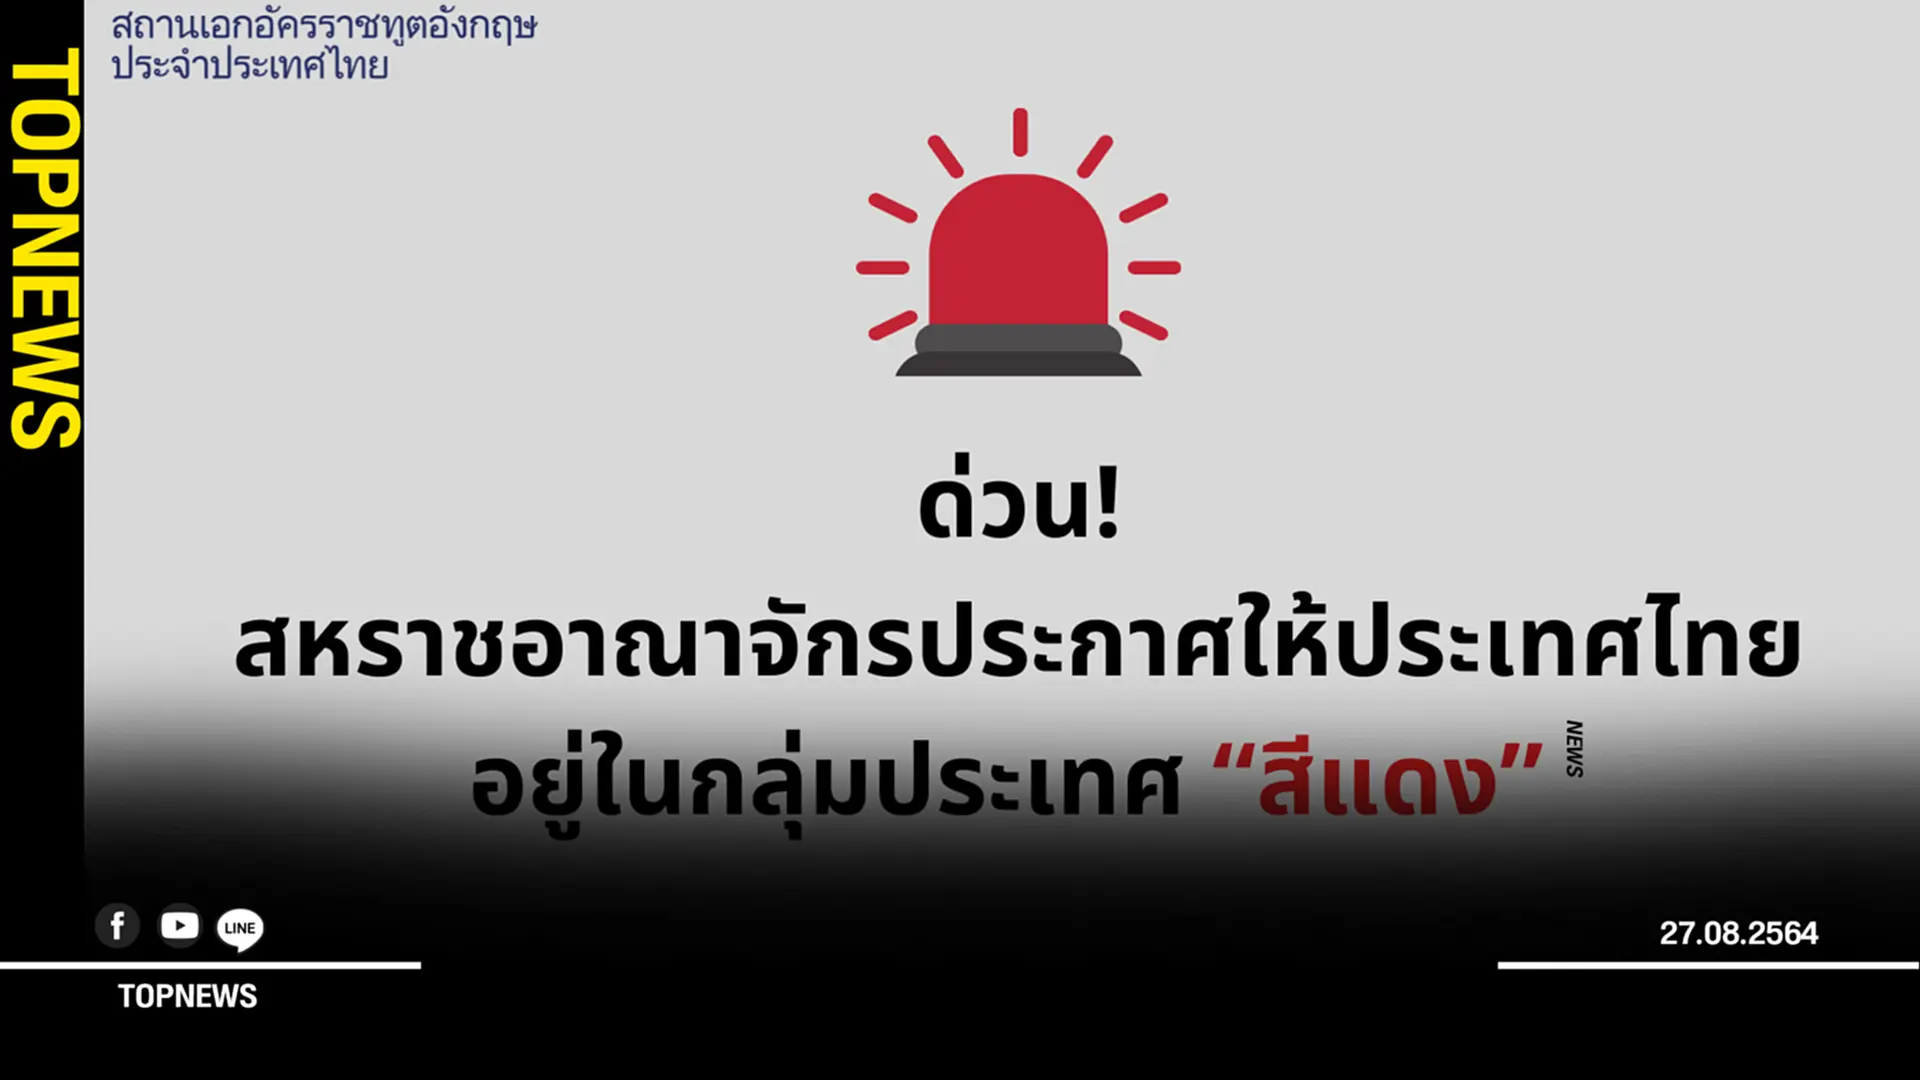 สถานทูตอังกฤษ แจ้งข่าวไทยถูกจัดเป็นประเทศ “สีแดง”